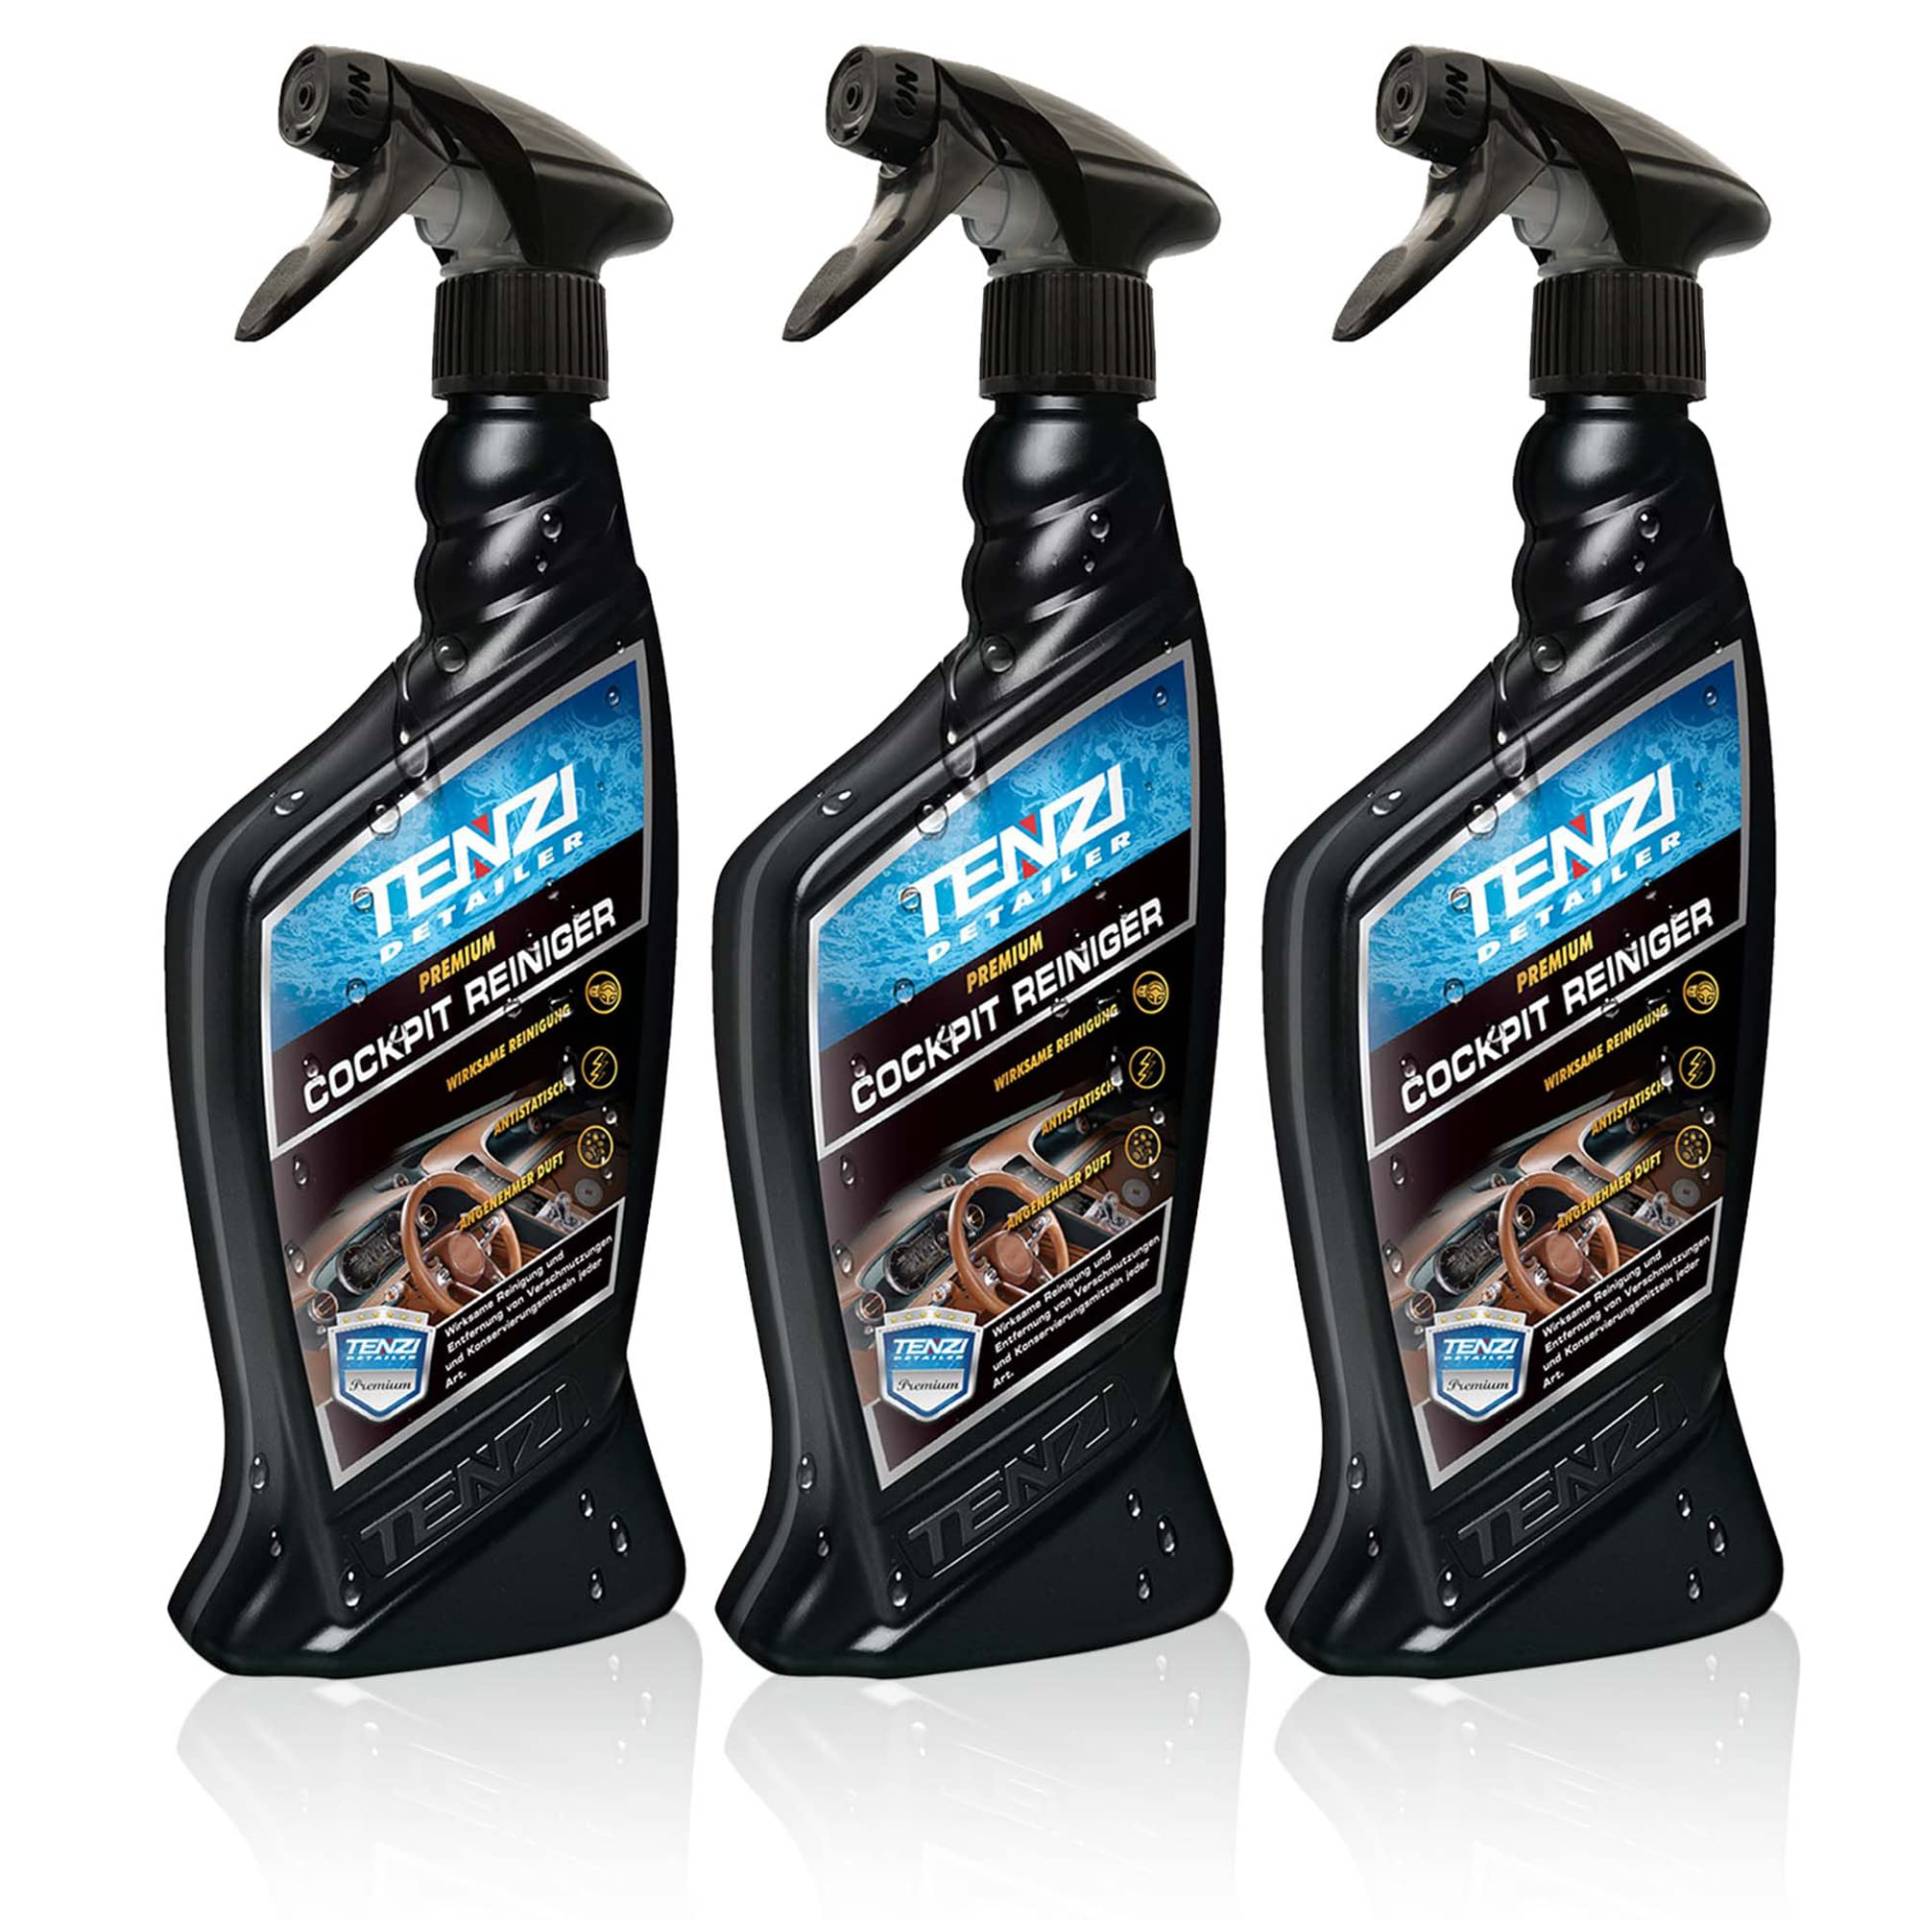 TENZI 3X Cockpitreiniger Premium (600ml) für Auto & Motorrad - Innenraumreiniger, antistatisch Effekt, angenehmer Duft, aufsprühen & abwischen - Autopflege, Kunststoffpflege, Reinigung Interior innen von TENZI